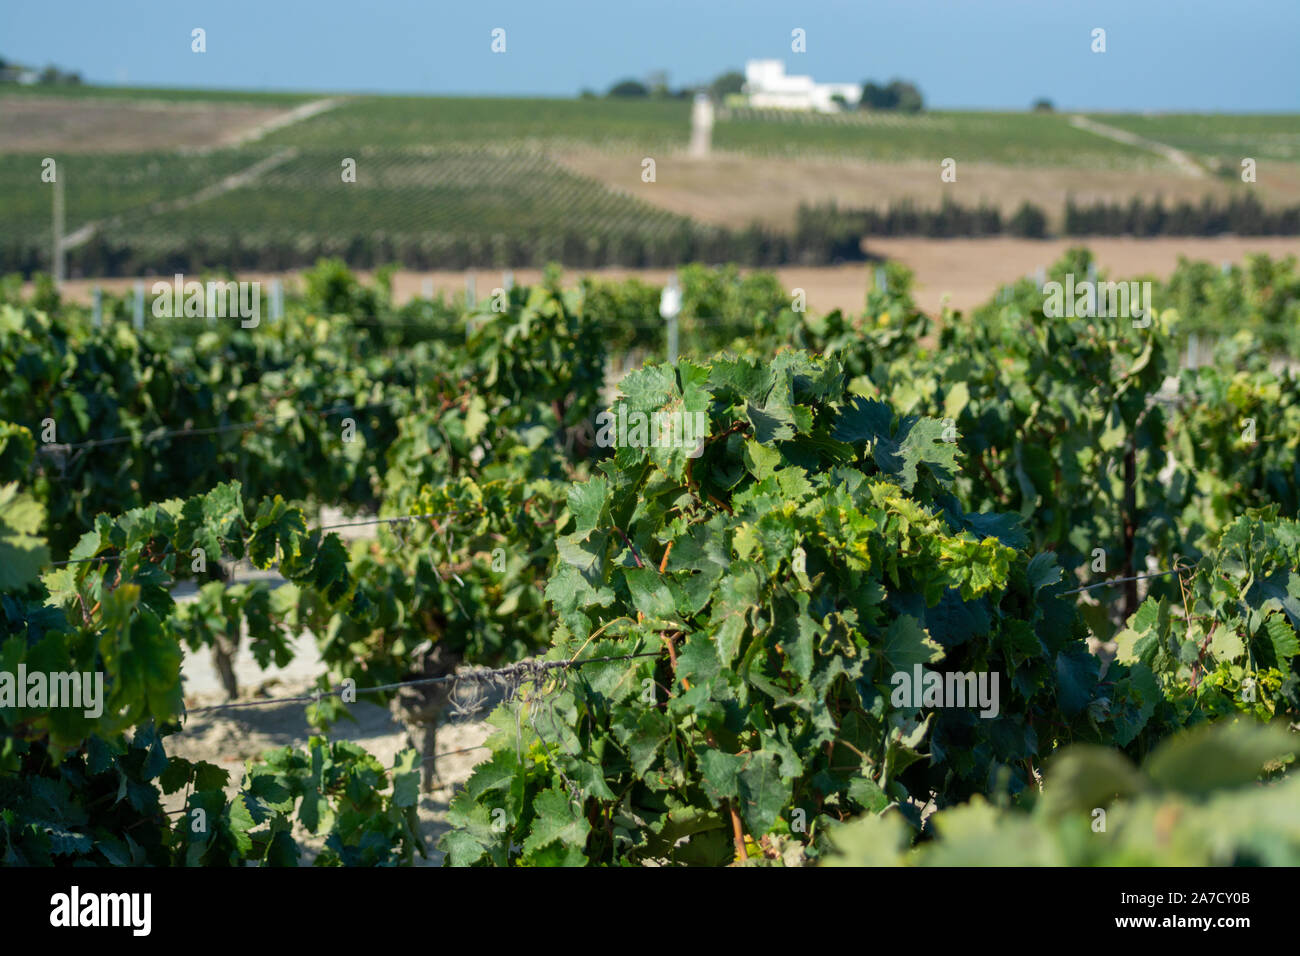 Paysage avec de célèbres vignobles vins sherry en Andalousie, Espagne, doux pedro ximenez ou muscat, ou prêt pour la récolte de raisins palomino, utilisé pour pr Banque D'Images